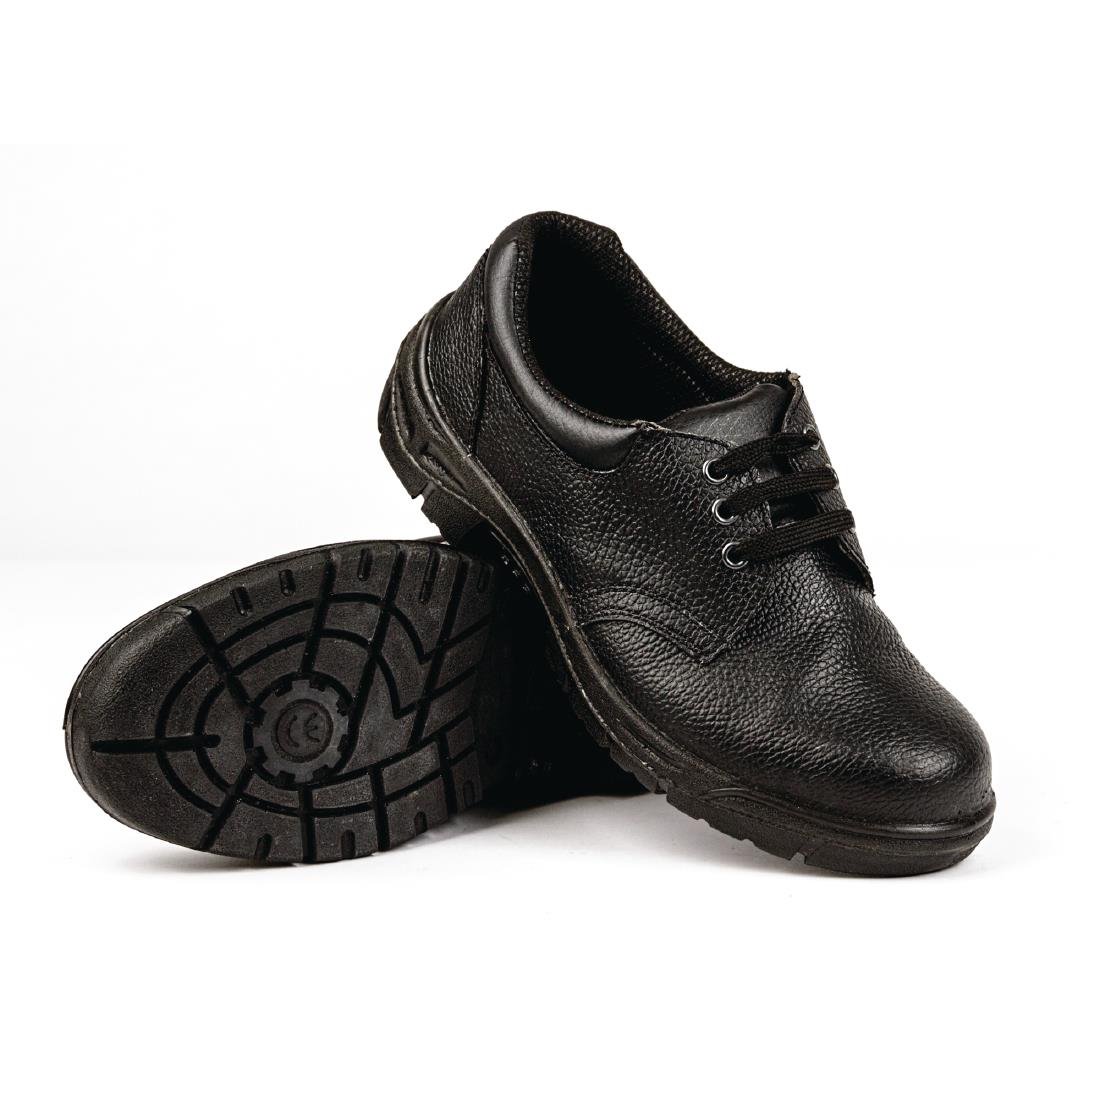 Slipbuster Unisex Safety Shoe Black 37 